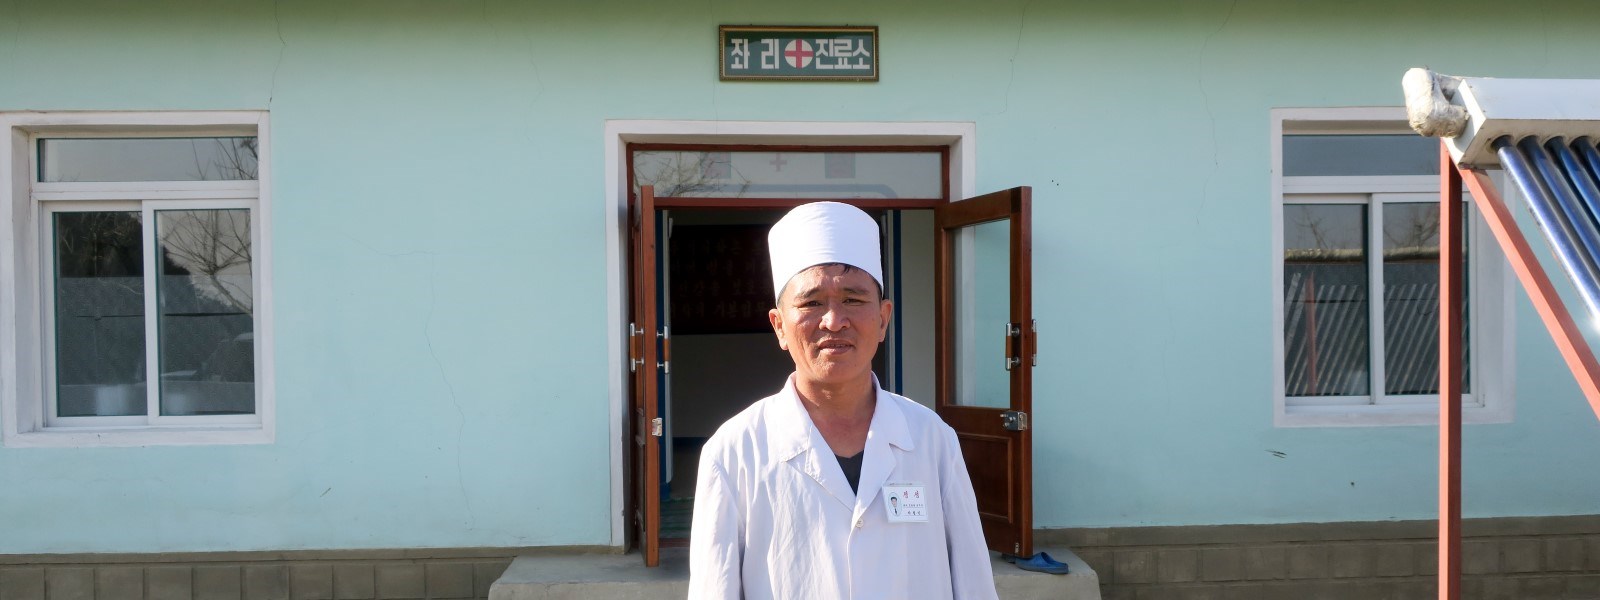 En mannlig lege står foran en Røde Kors-klinikk